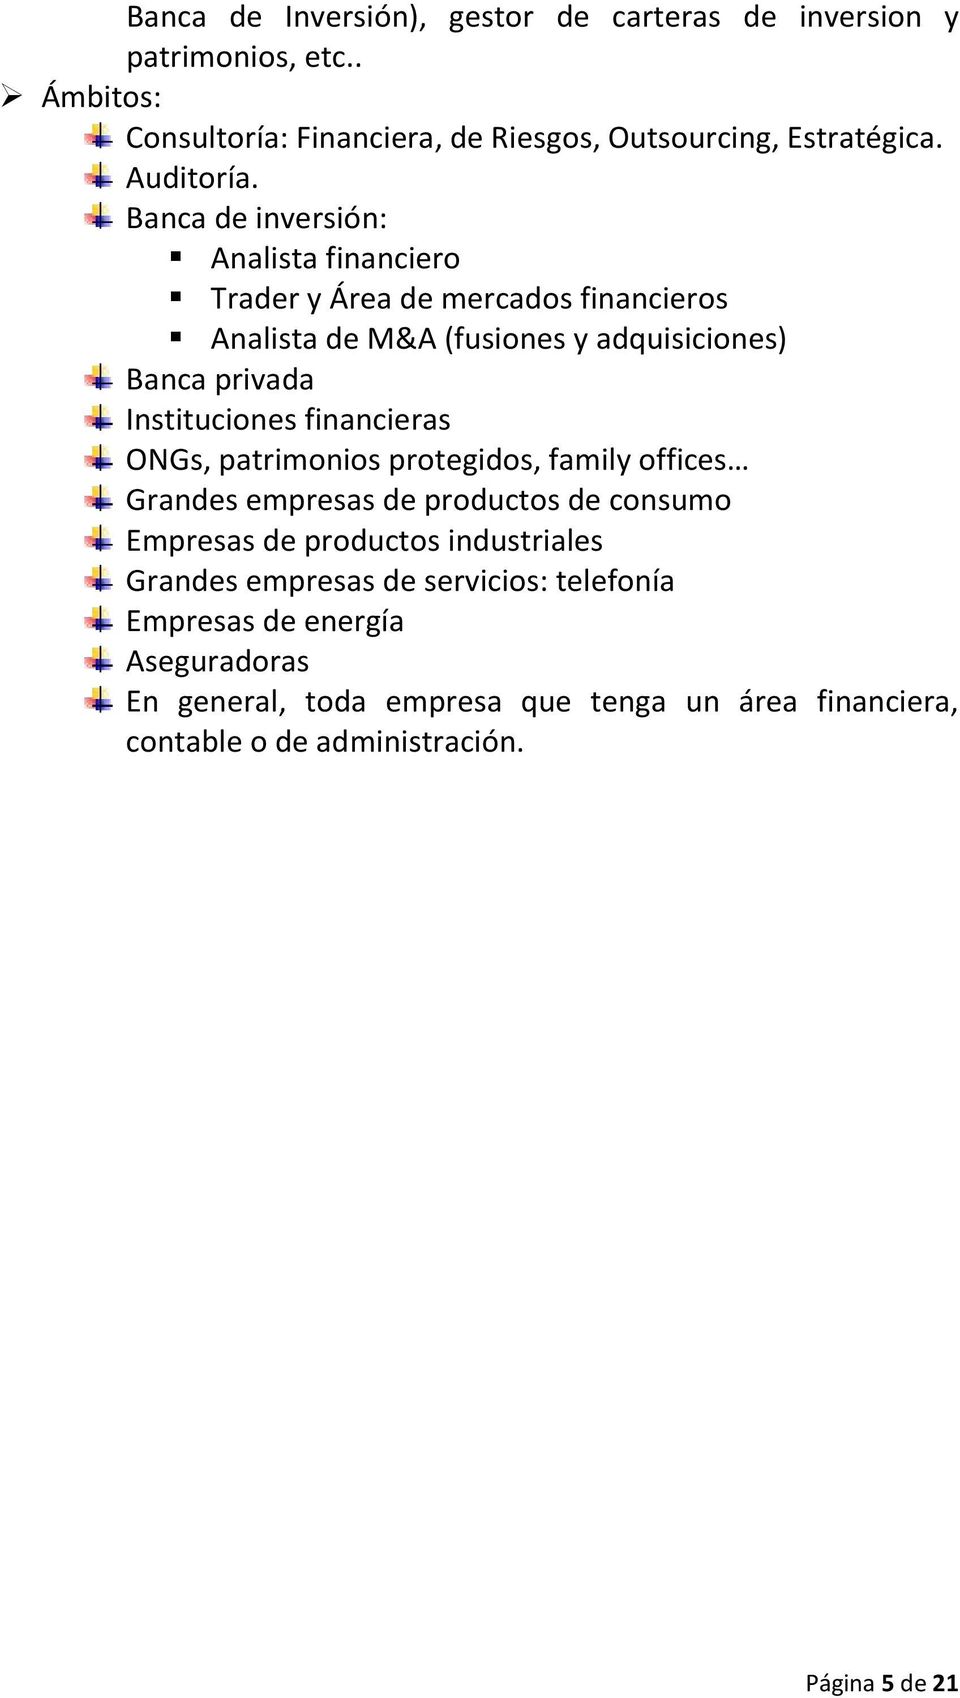 Banca de inversión: Analista financiero Trader y Área de mercados financieros Analista de M&A (fusiones y adquisiciones) Banca privada Instituciones